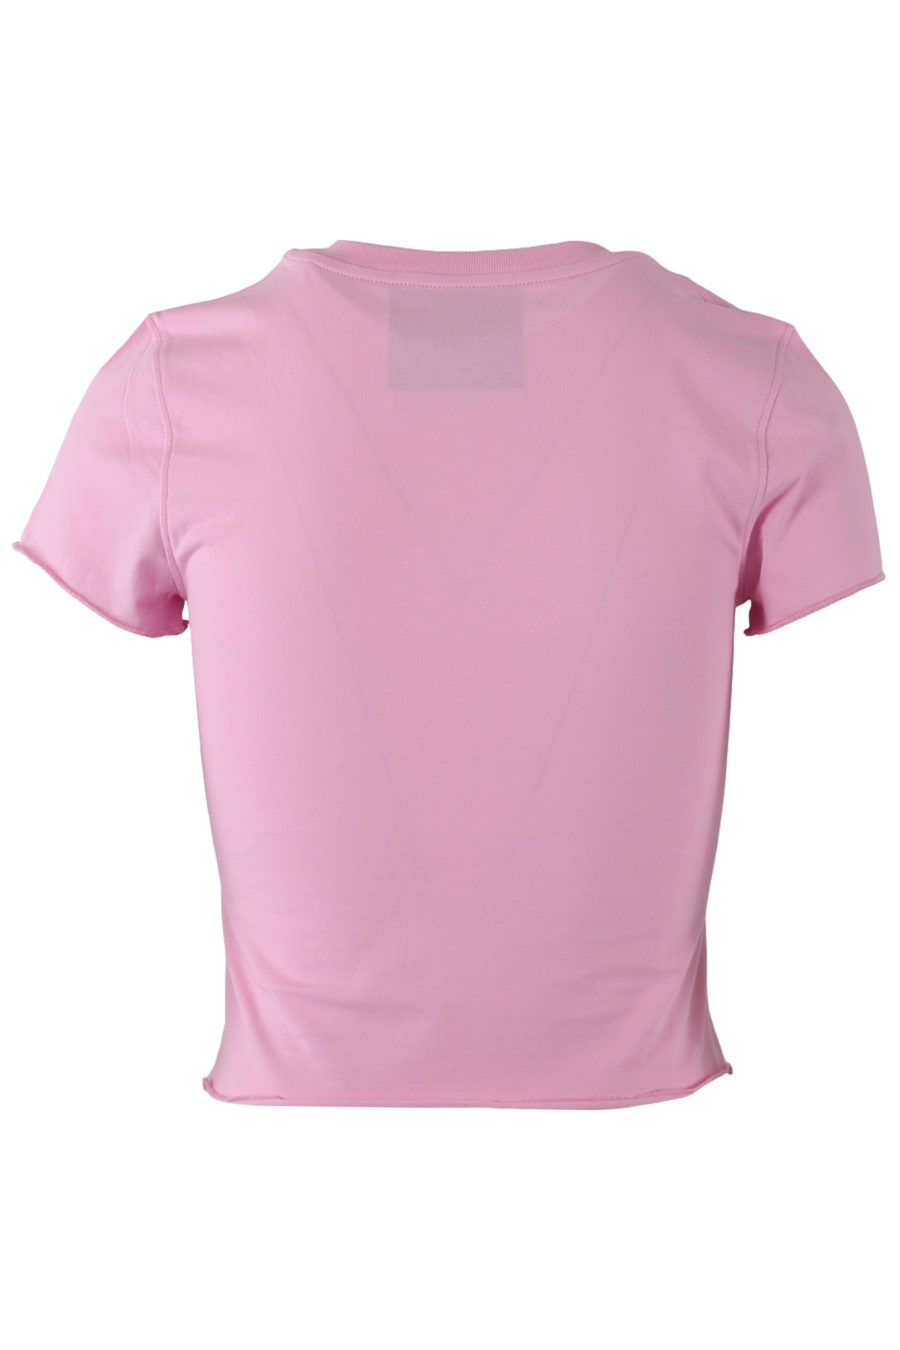 Camiseta corta de color rosa con logo brillante - 37ecb806b474fef5f88d1d3a0f2124d832ce588b